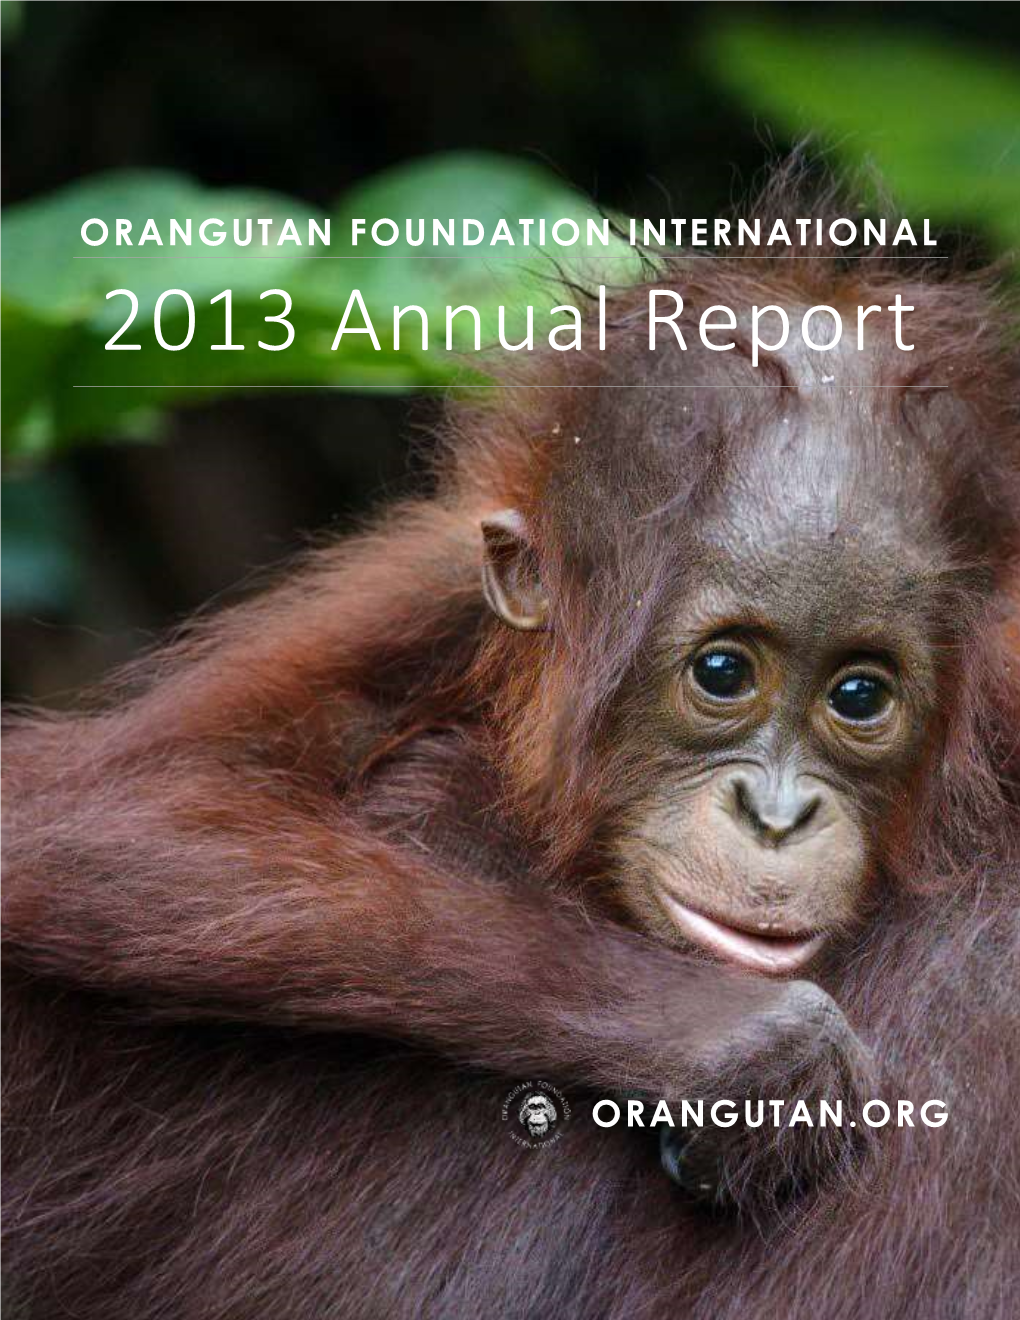 OFI's 2013 Annual Report